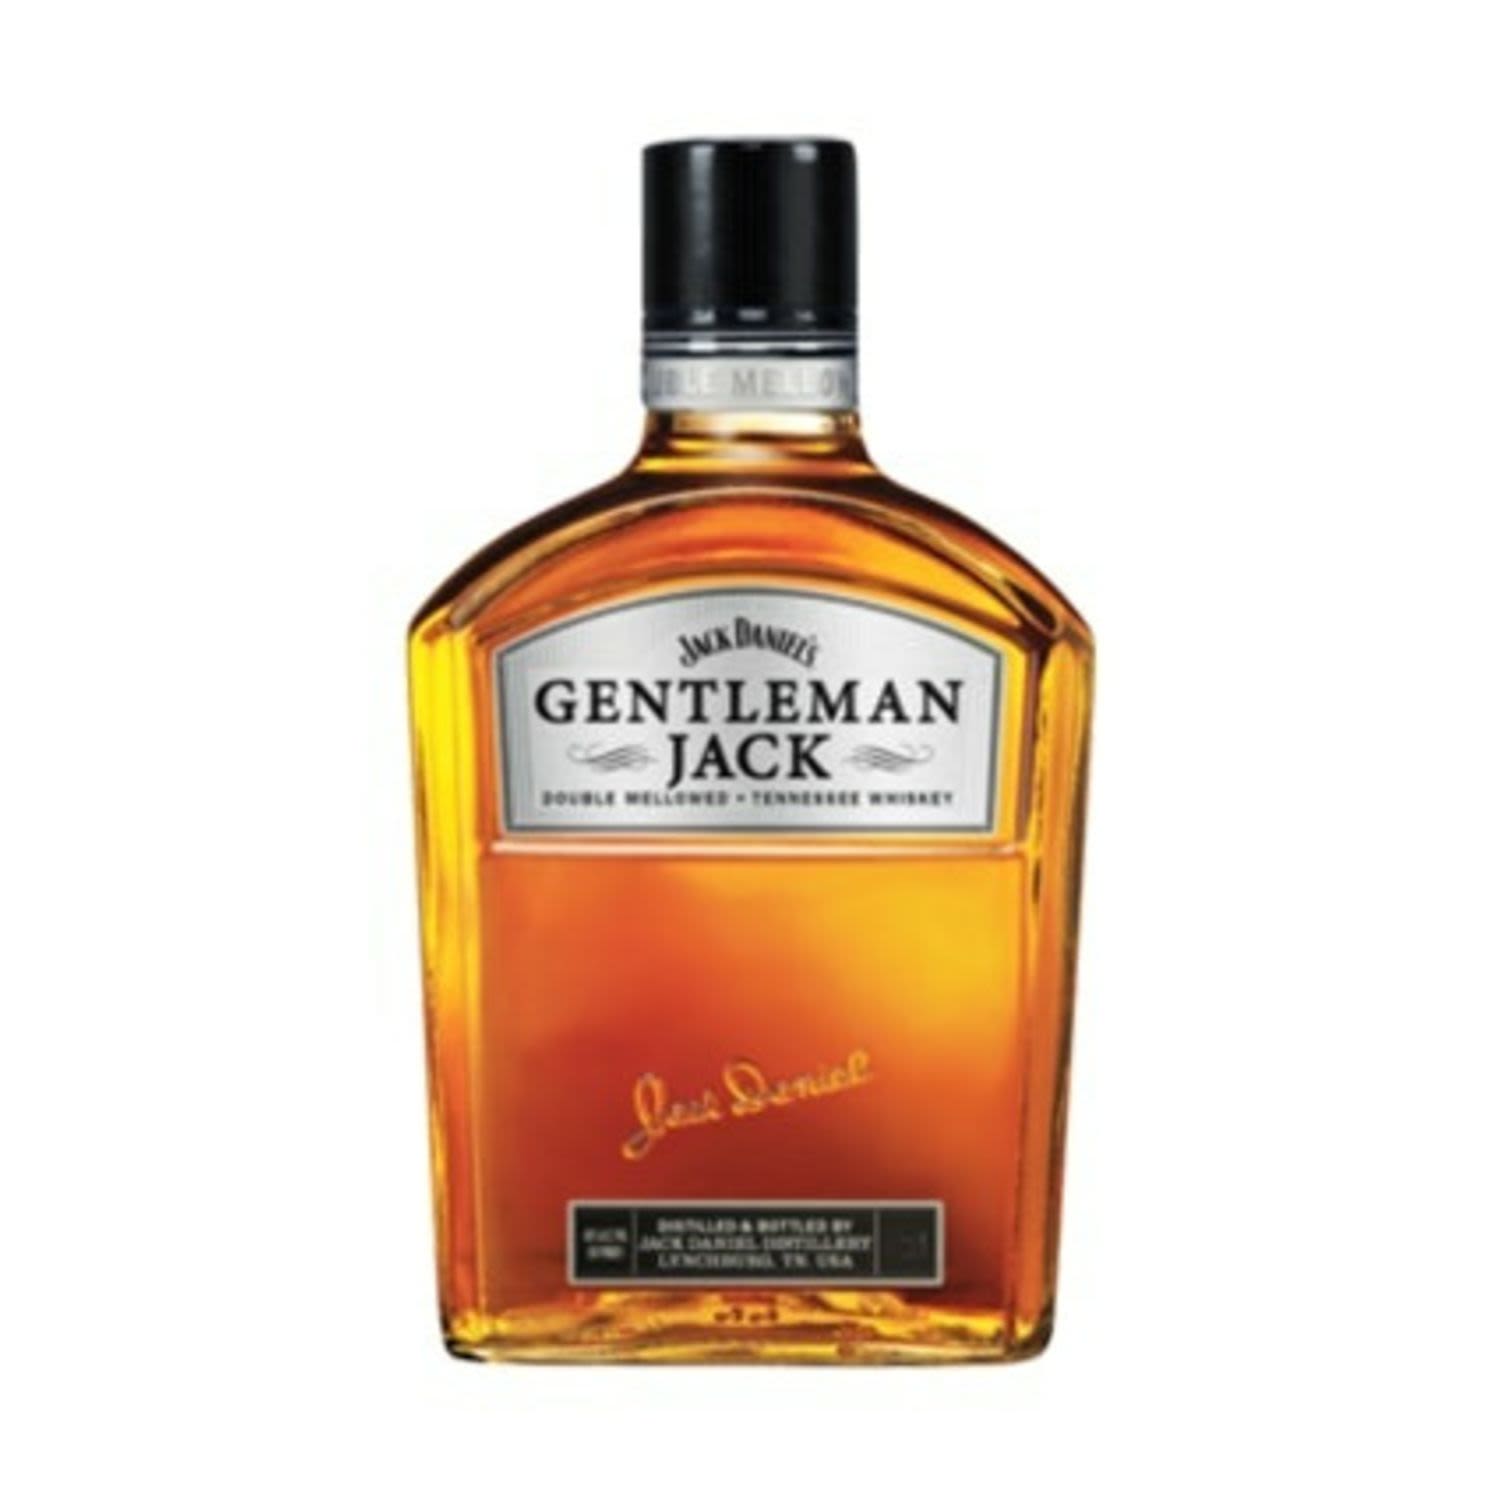 Jack Daniel's Gentleman Jack 200mL Bottle